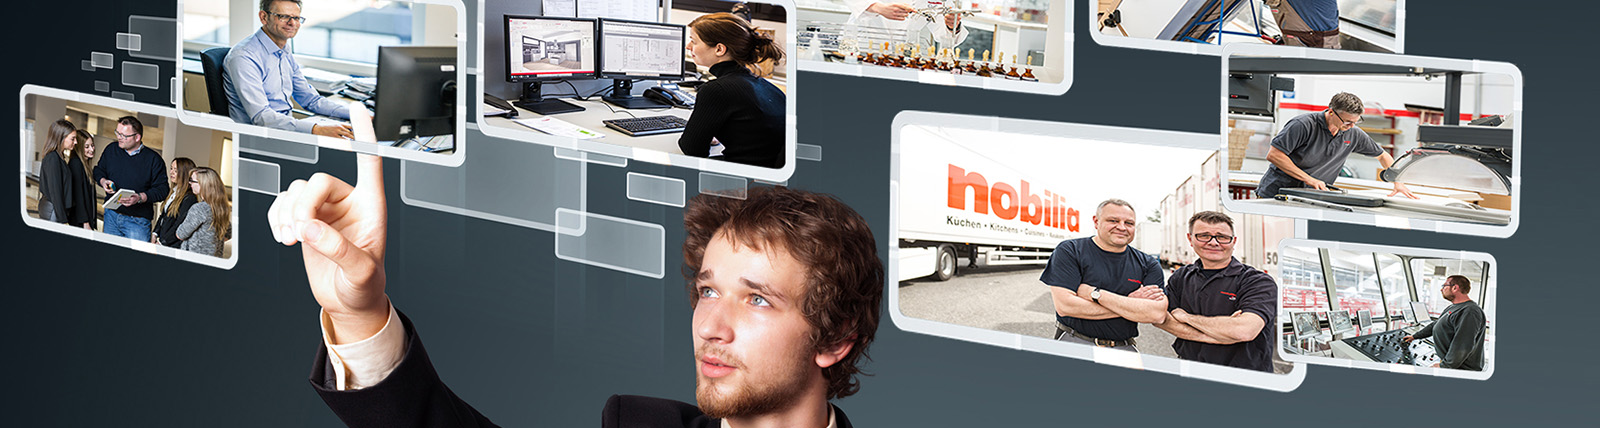 [Translate to nl:] Mann wählt potenzielle Stellen bei nobilia auf Touchscreen.